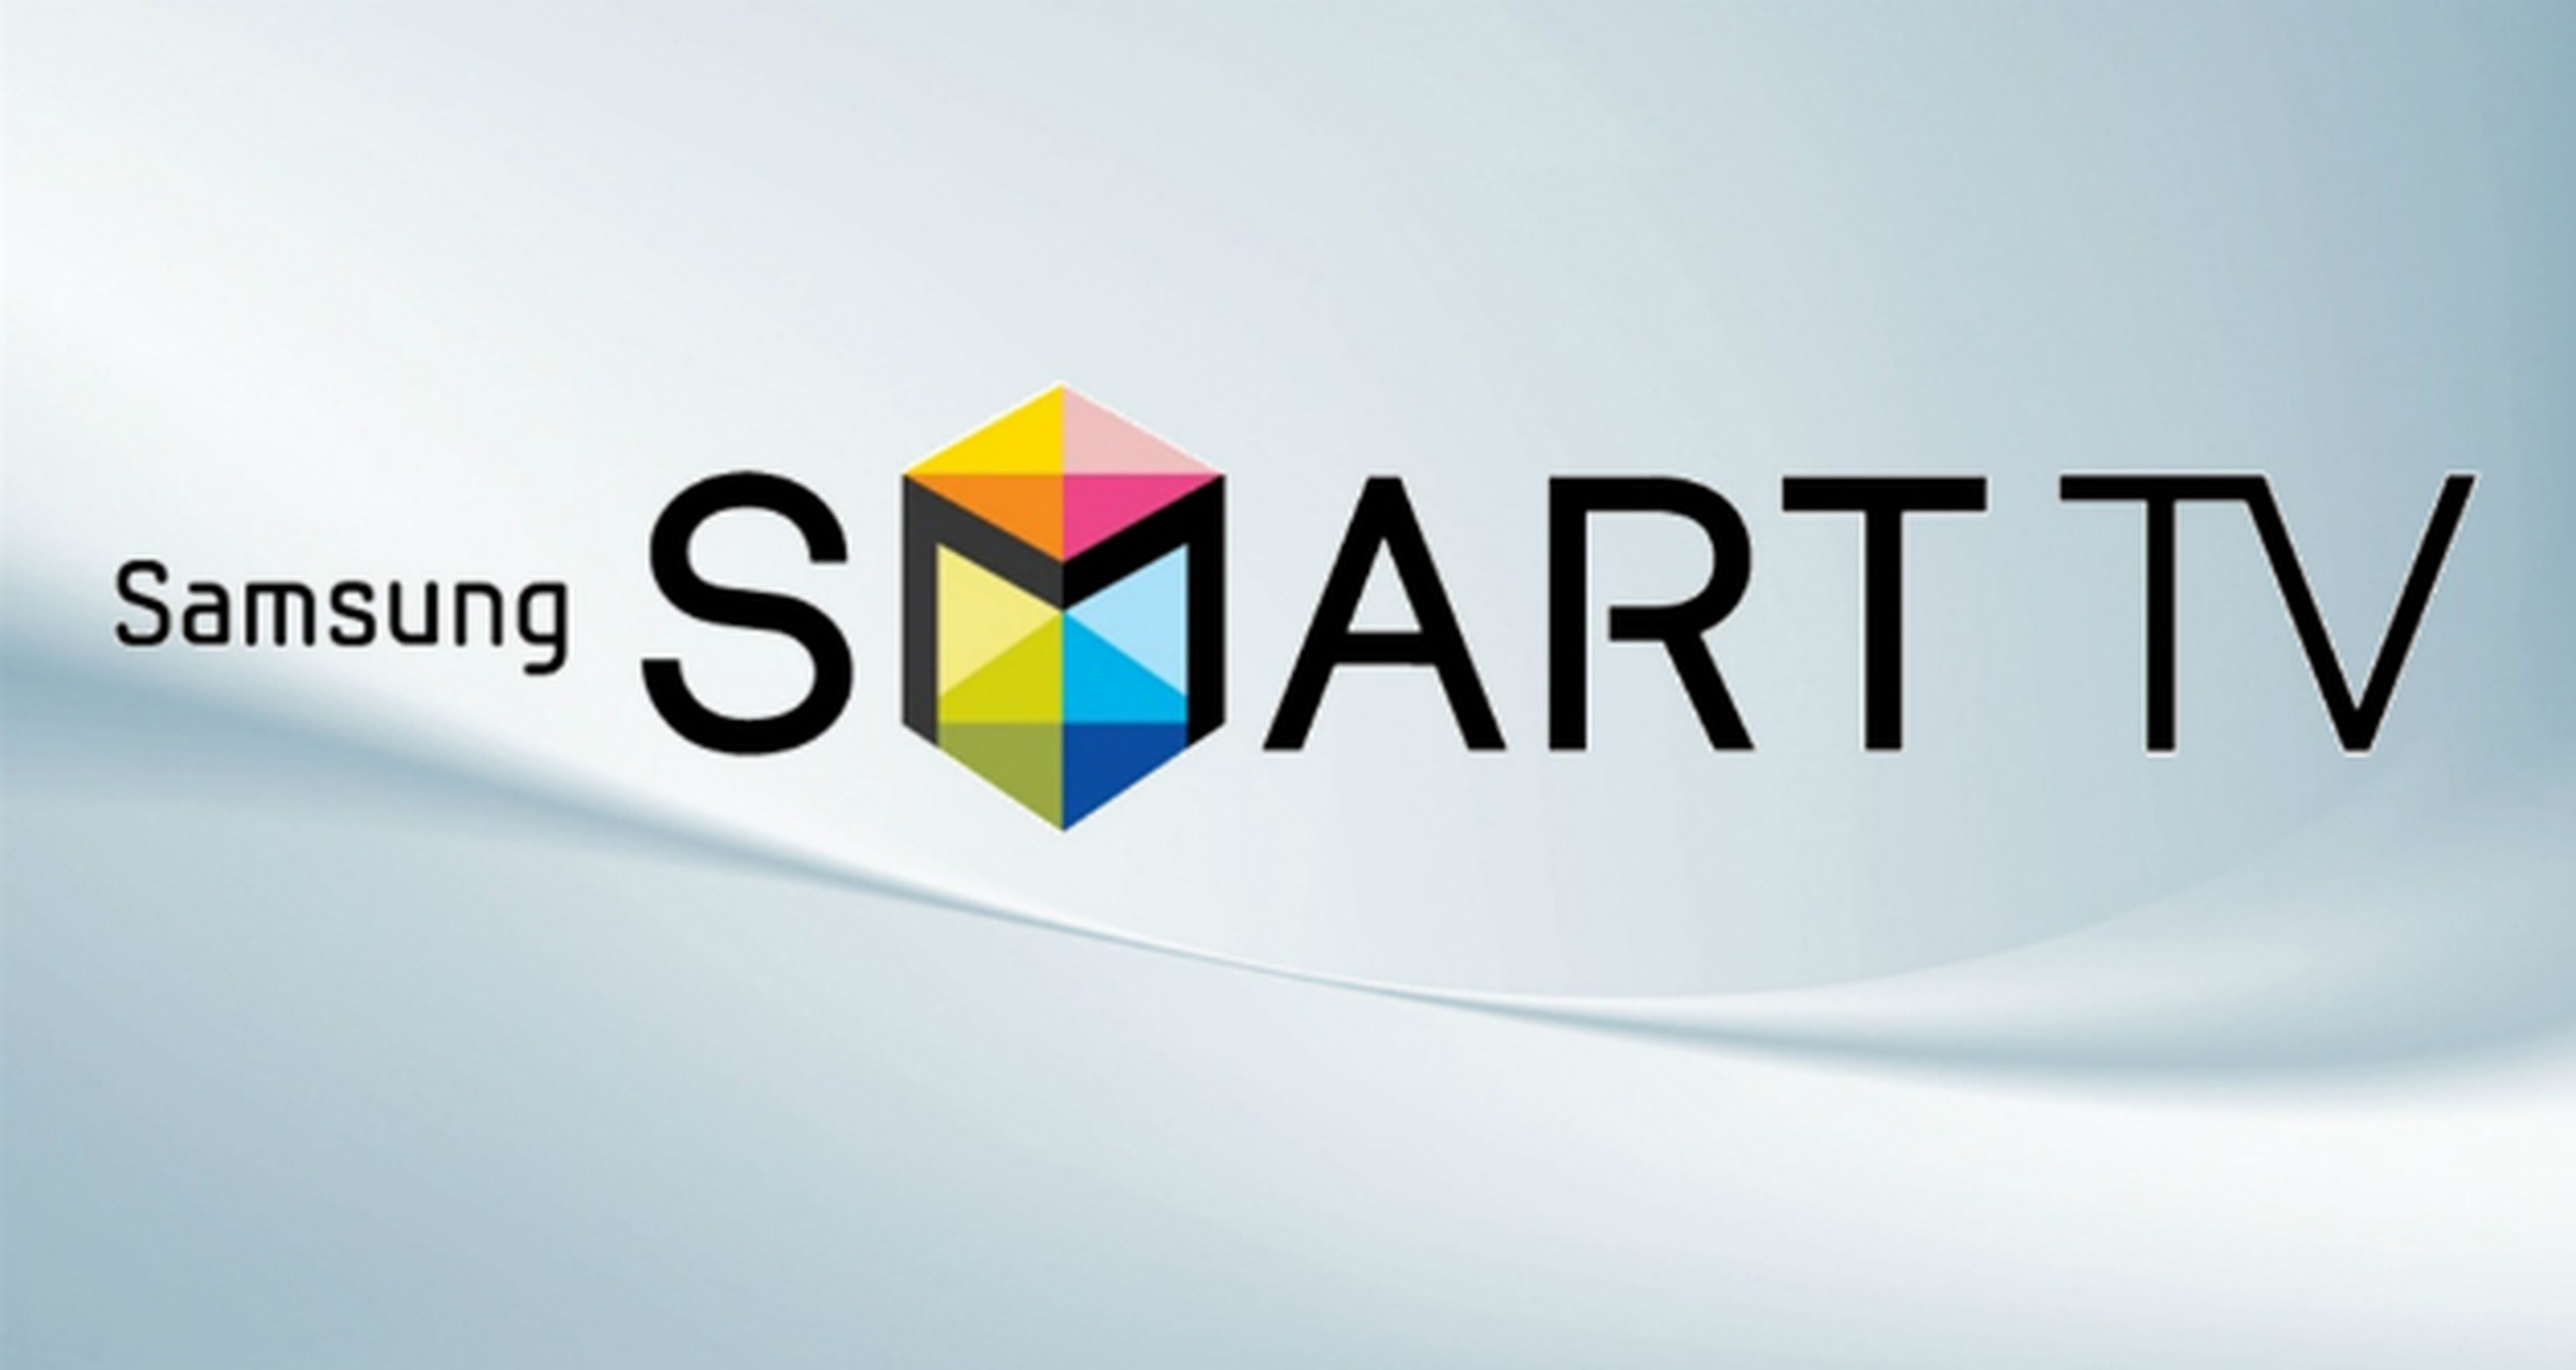 Samsung Smart TV presenta GameFly, un nuevo servicio de videojuegos en streaming